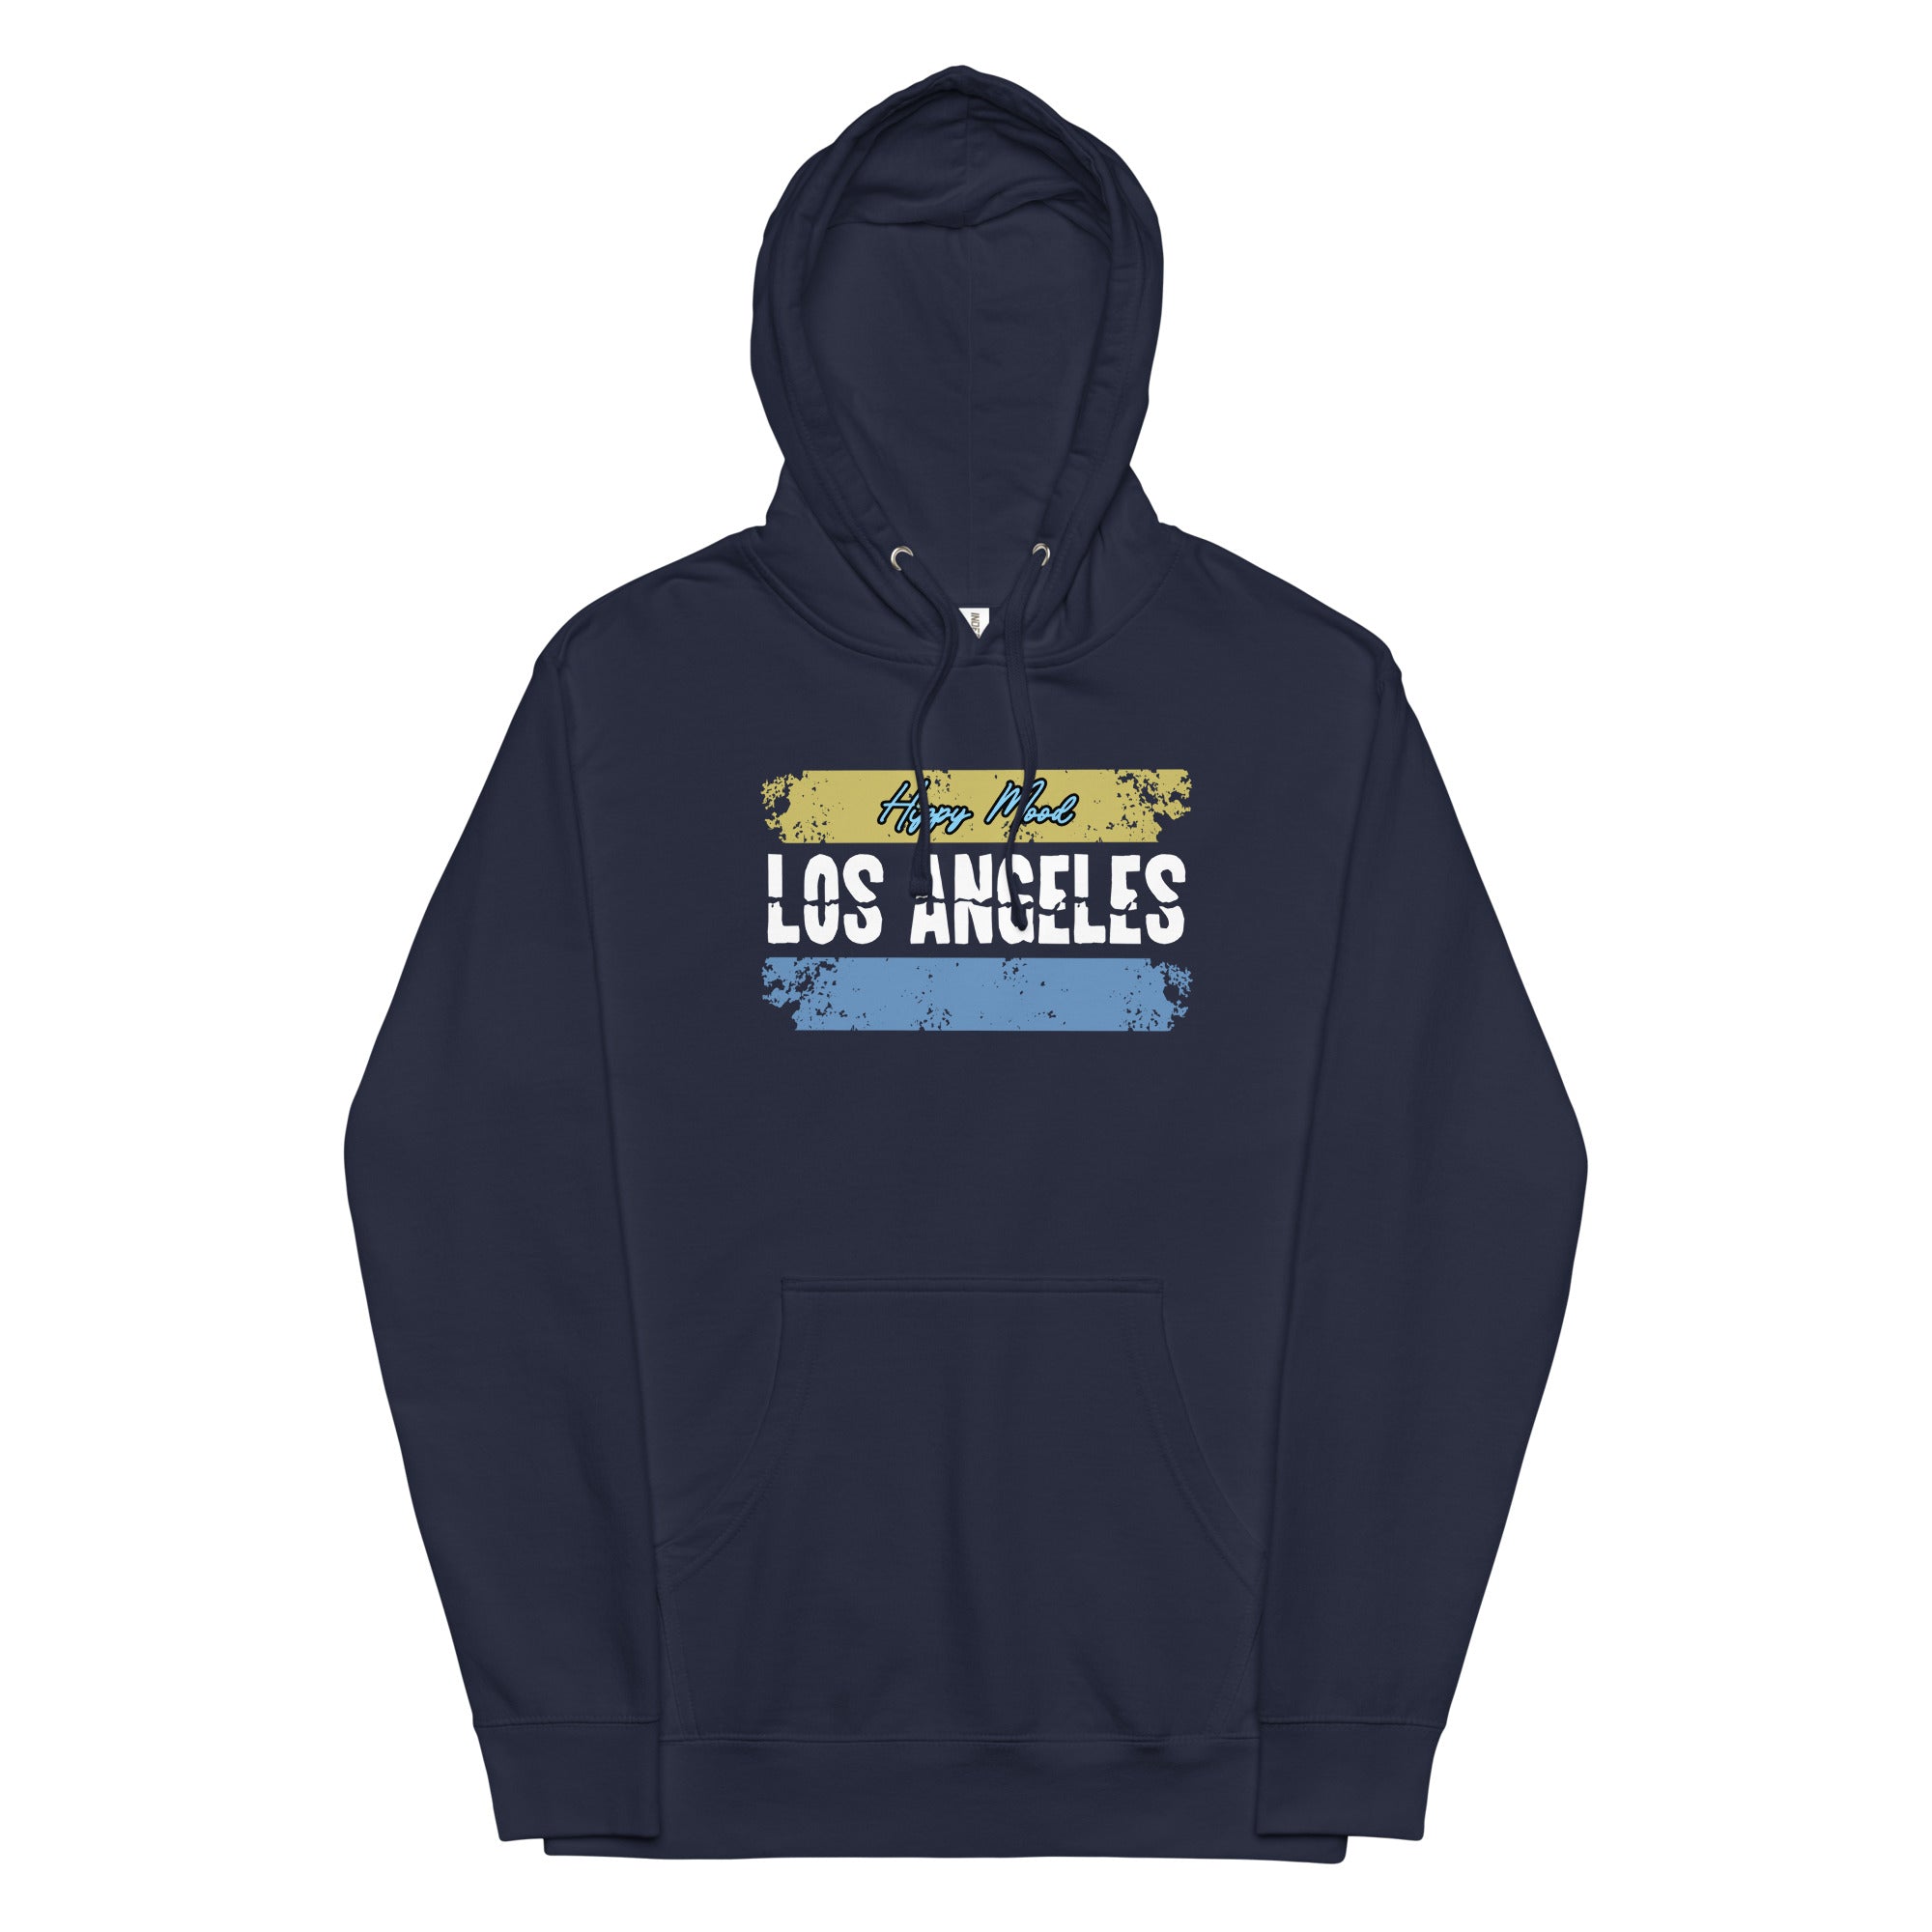 Los Angeles | Unisex midweight hoodie